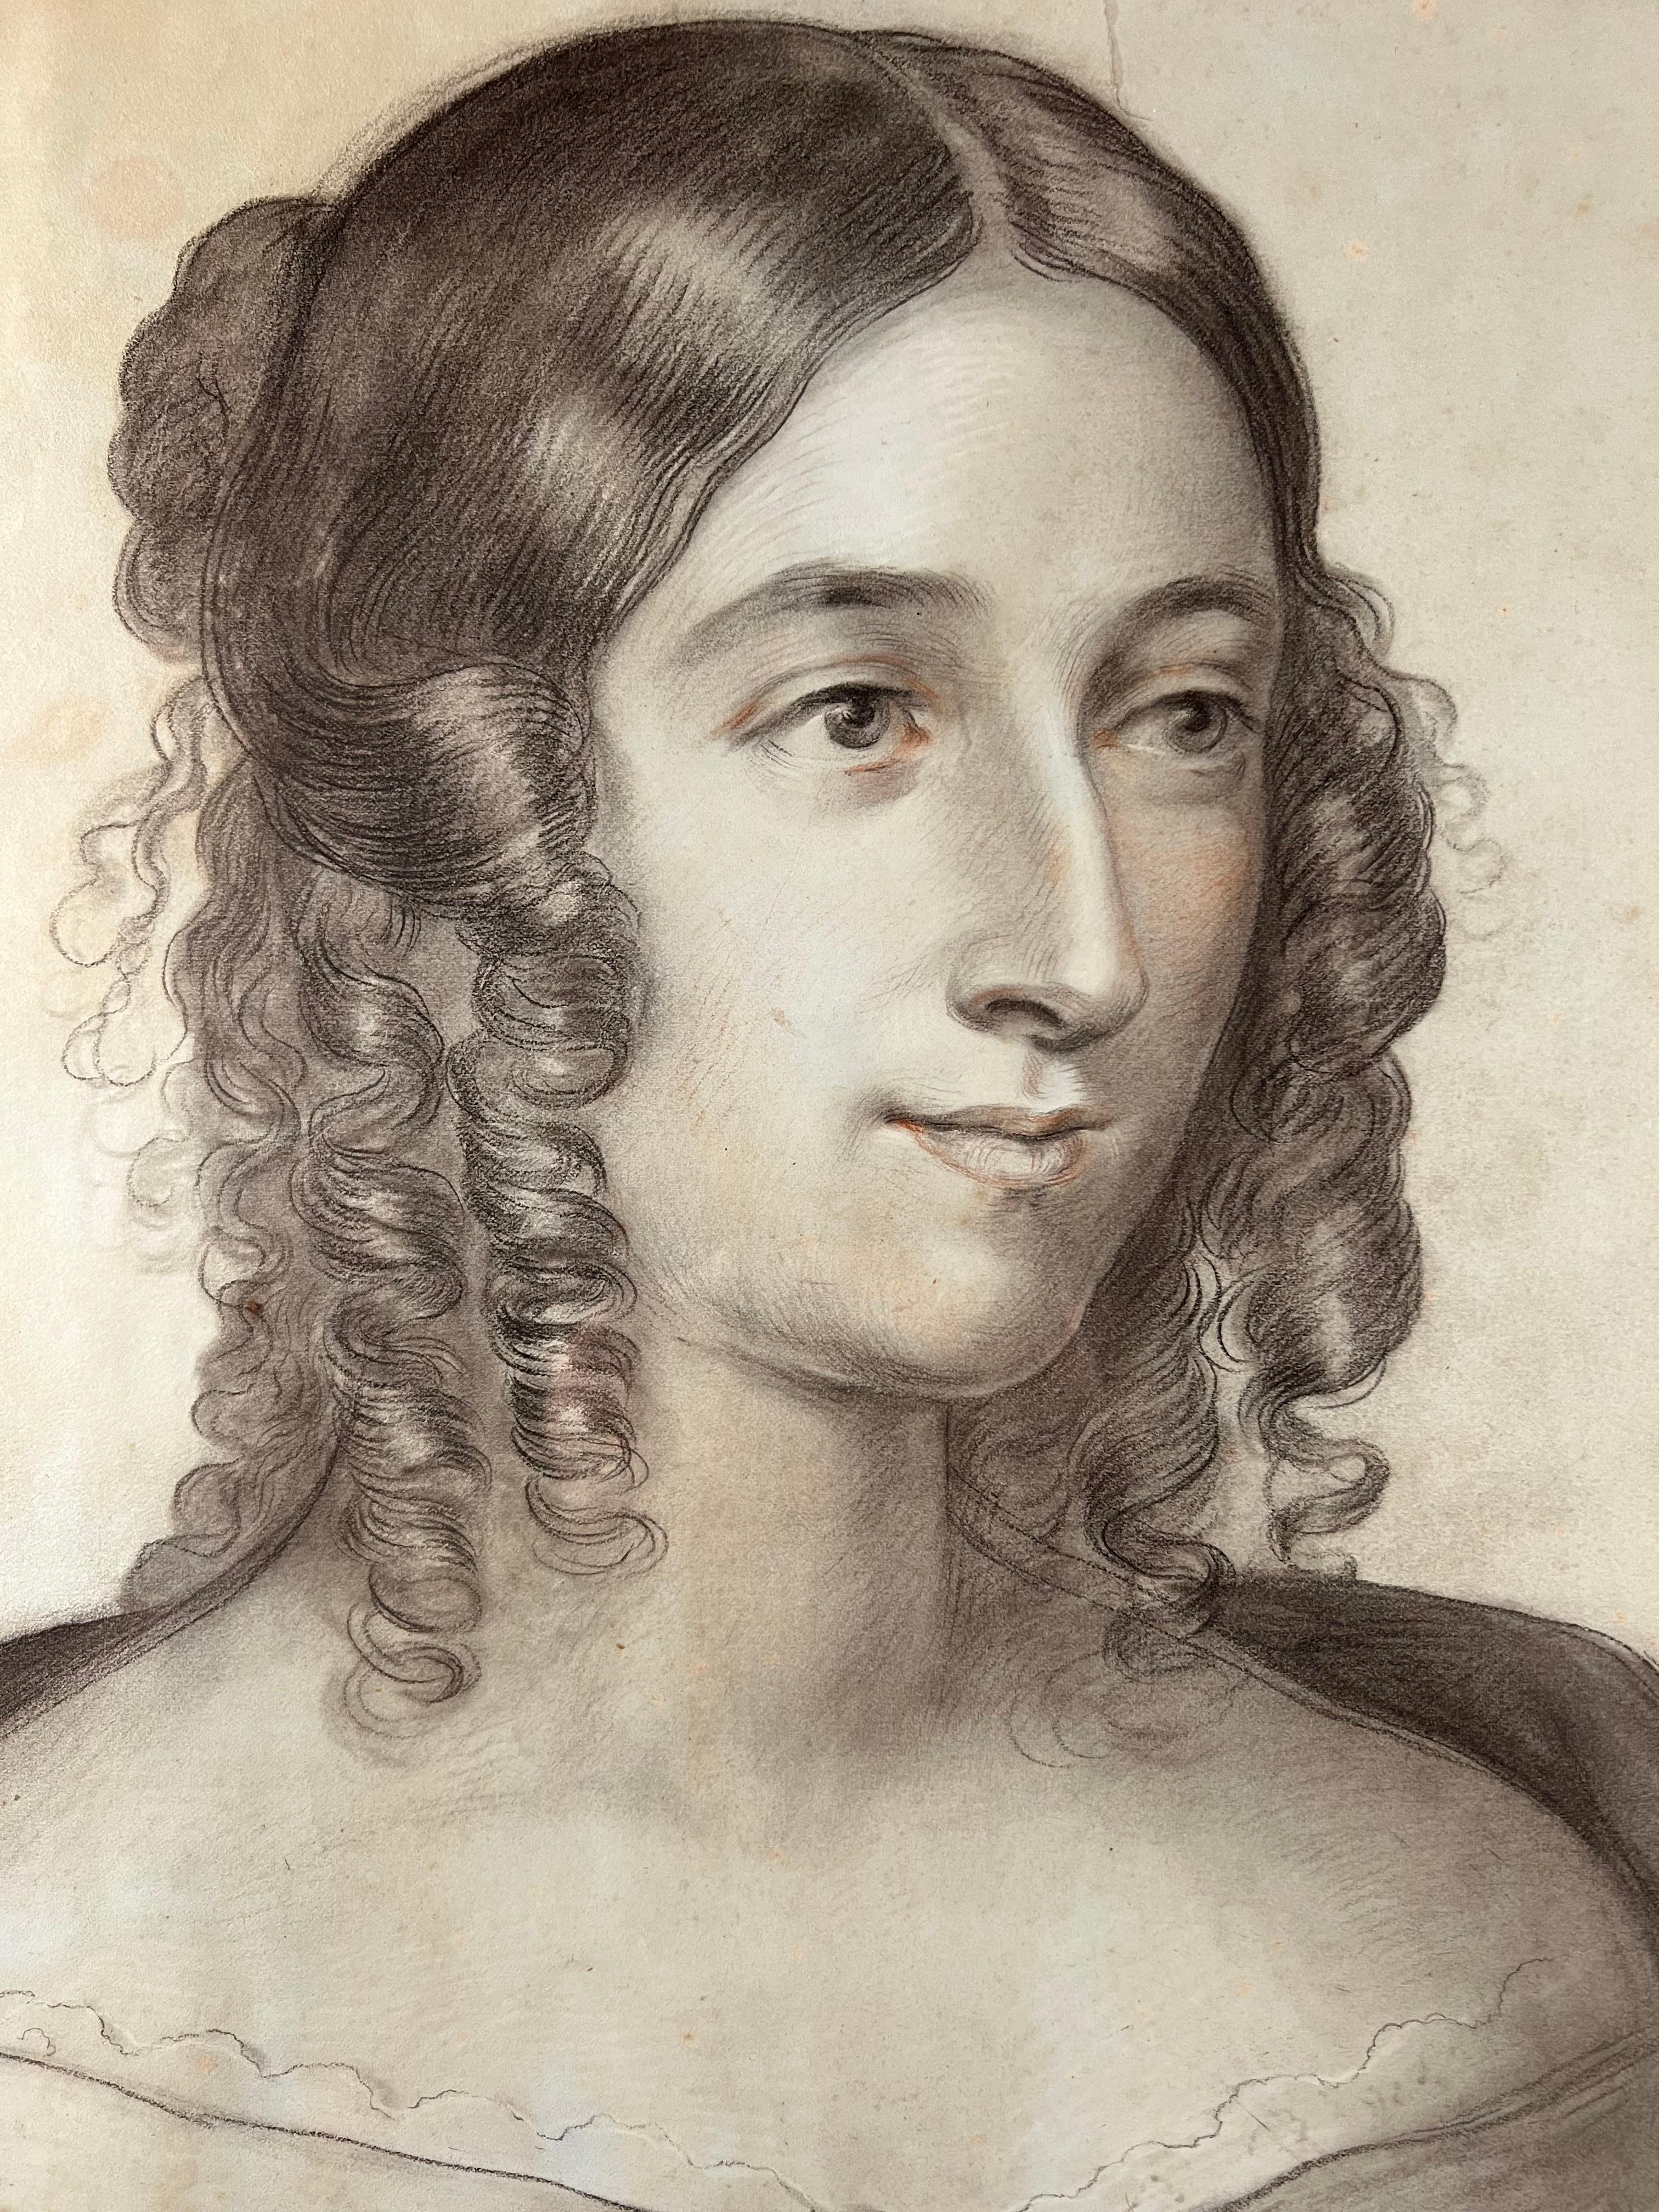 Diese faszinierende Pastellzeichnung auf Papier stellt ein junges Mädchen aus dem frühen 19. Jahrhundert dar. Ihr unverwechselbarer, durchdringender Blick ist eindringlich, die zarten und komplizierten Details ihres Kleides und ihrer Haare sind